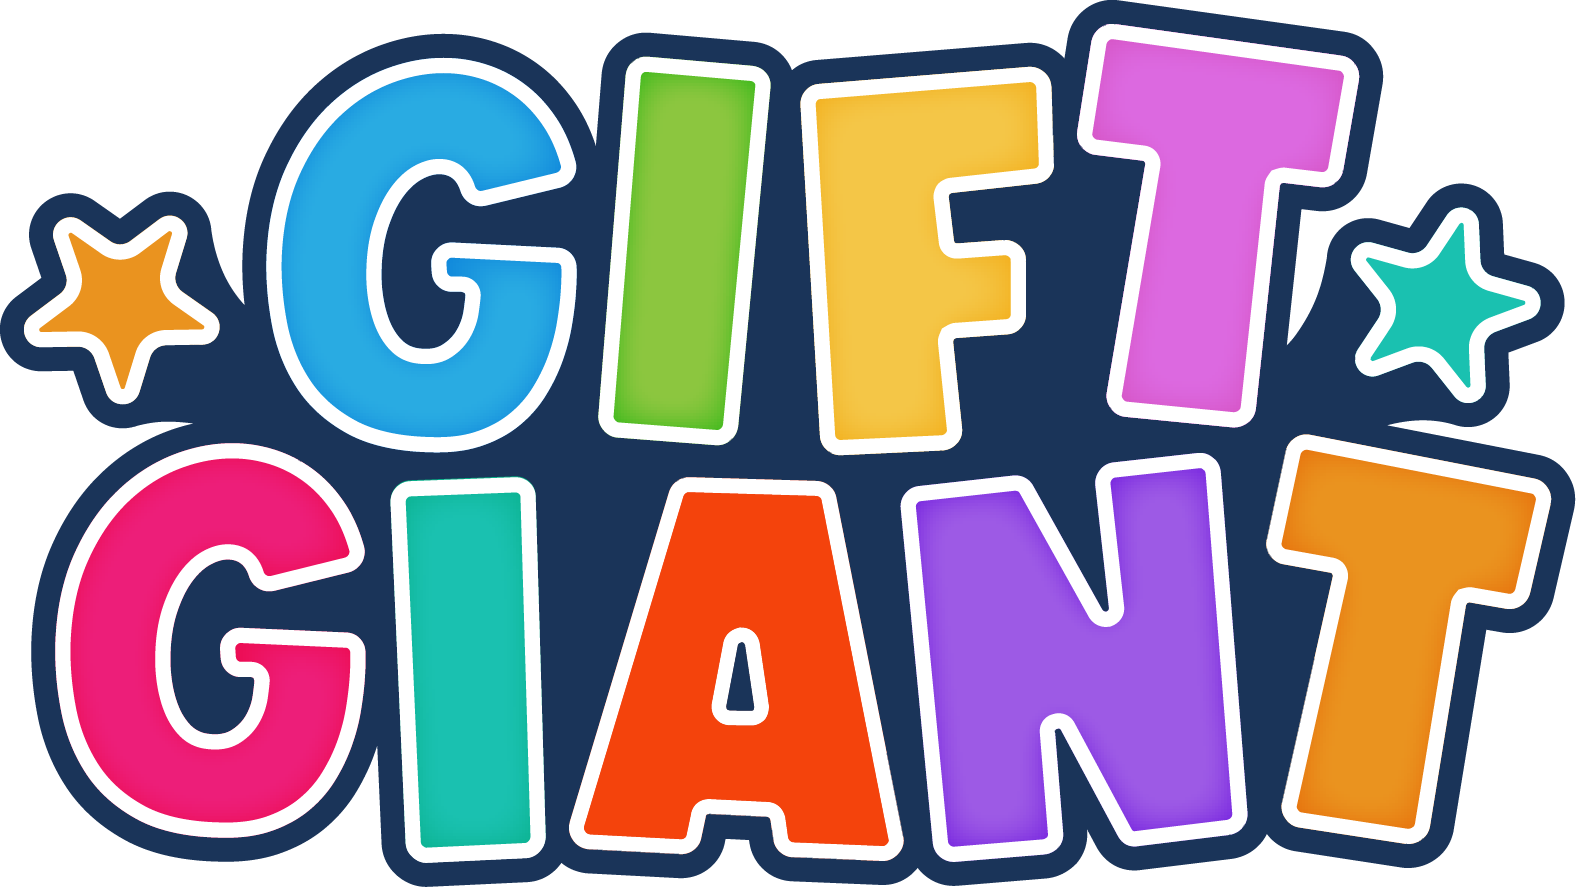 Gift Giant